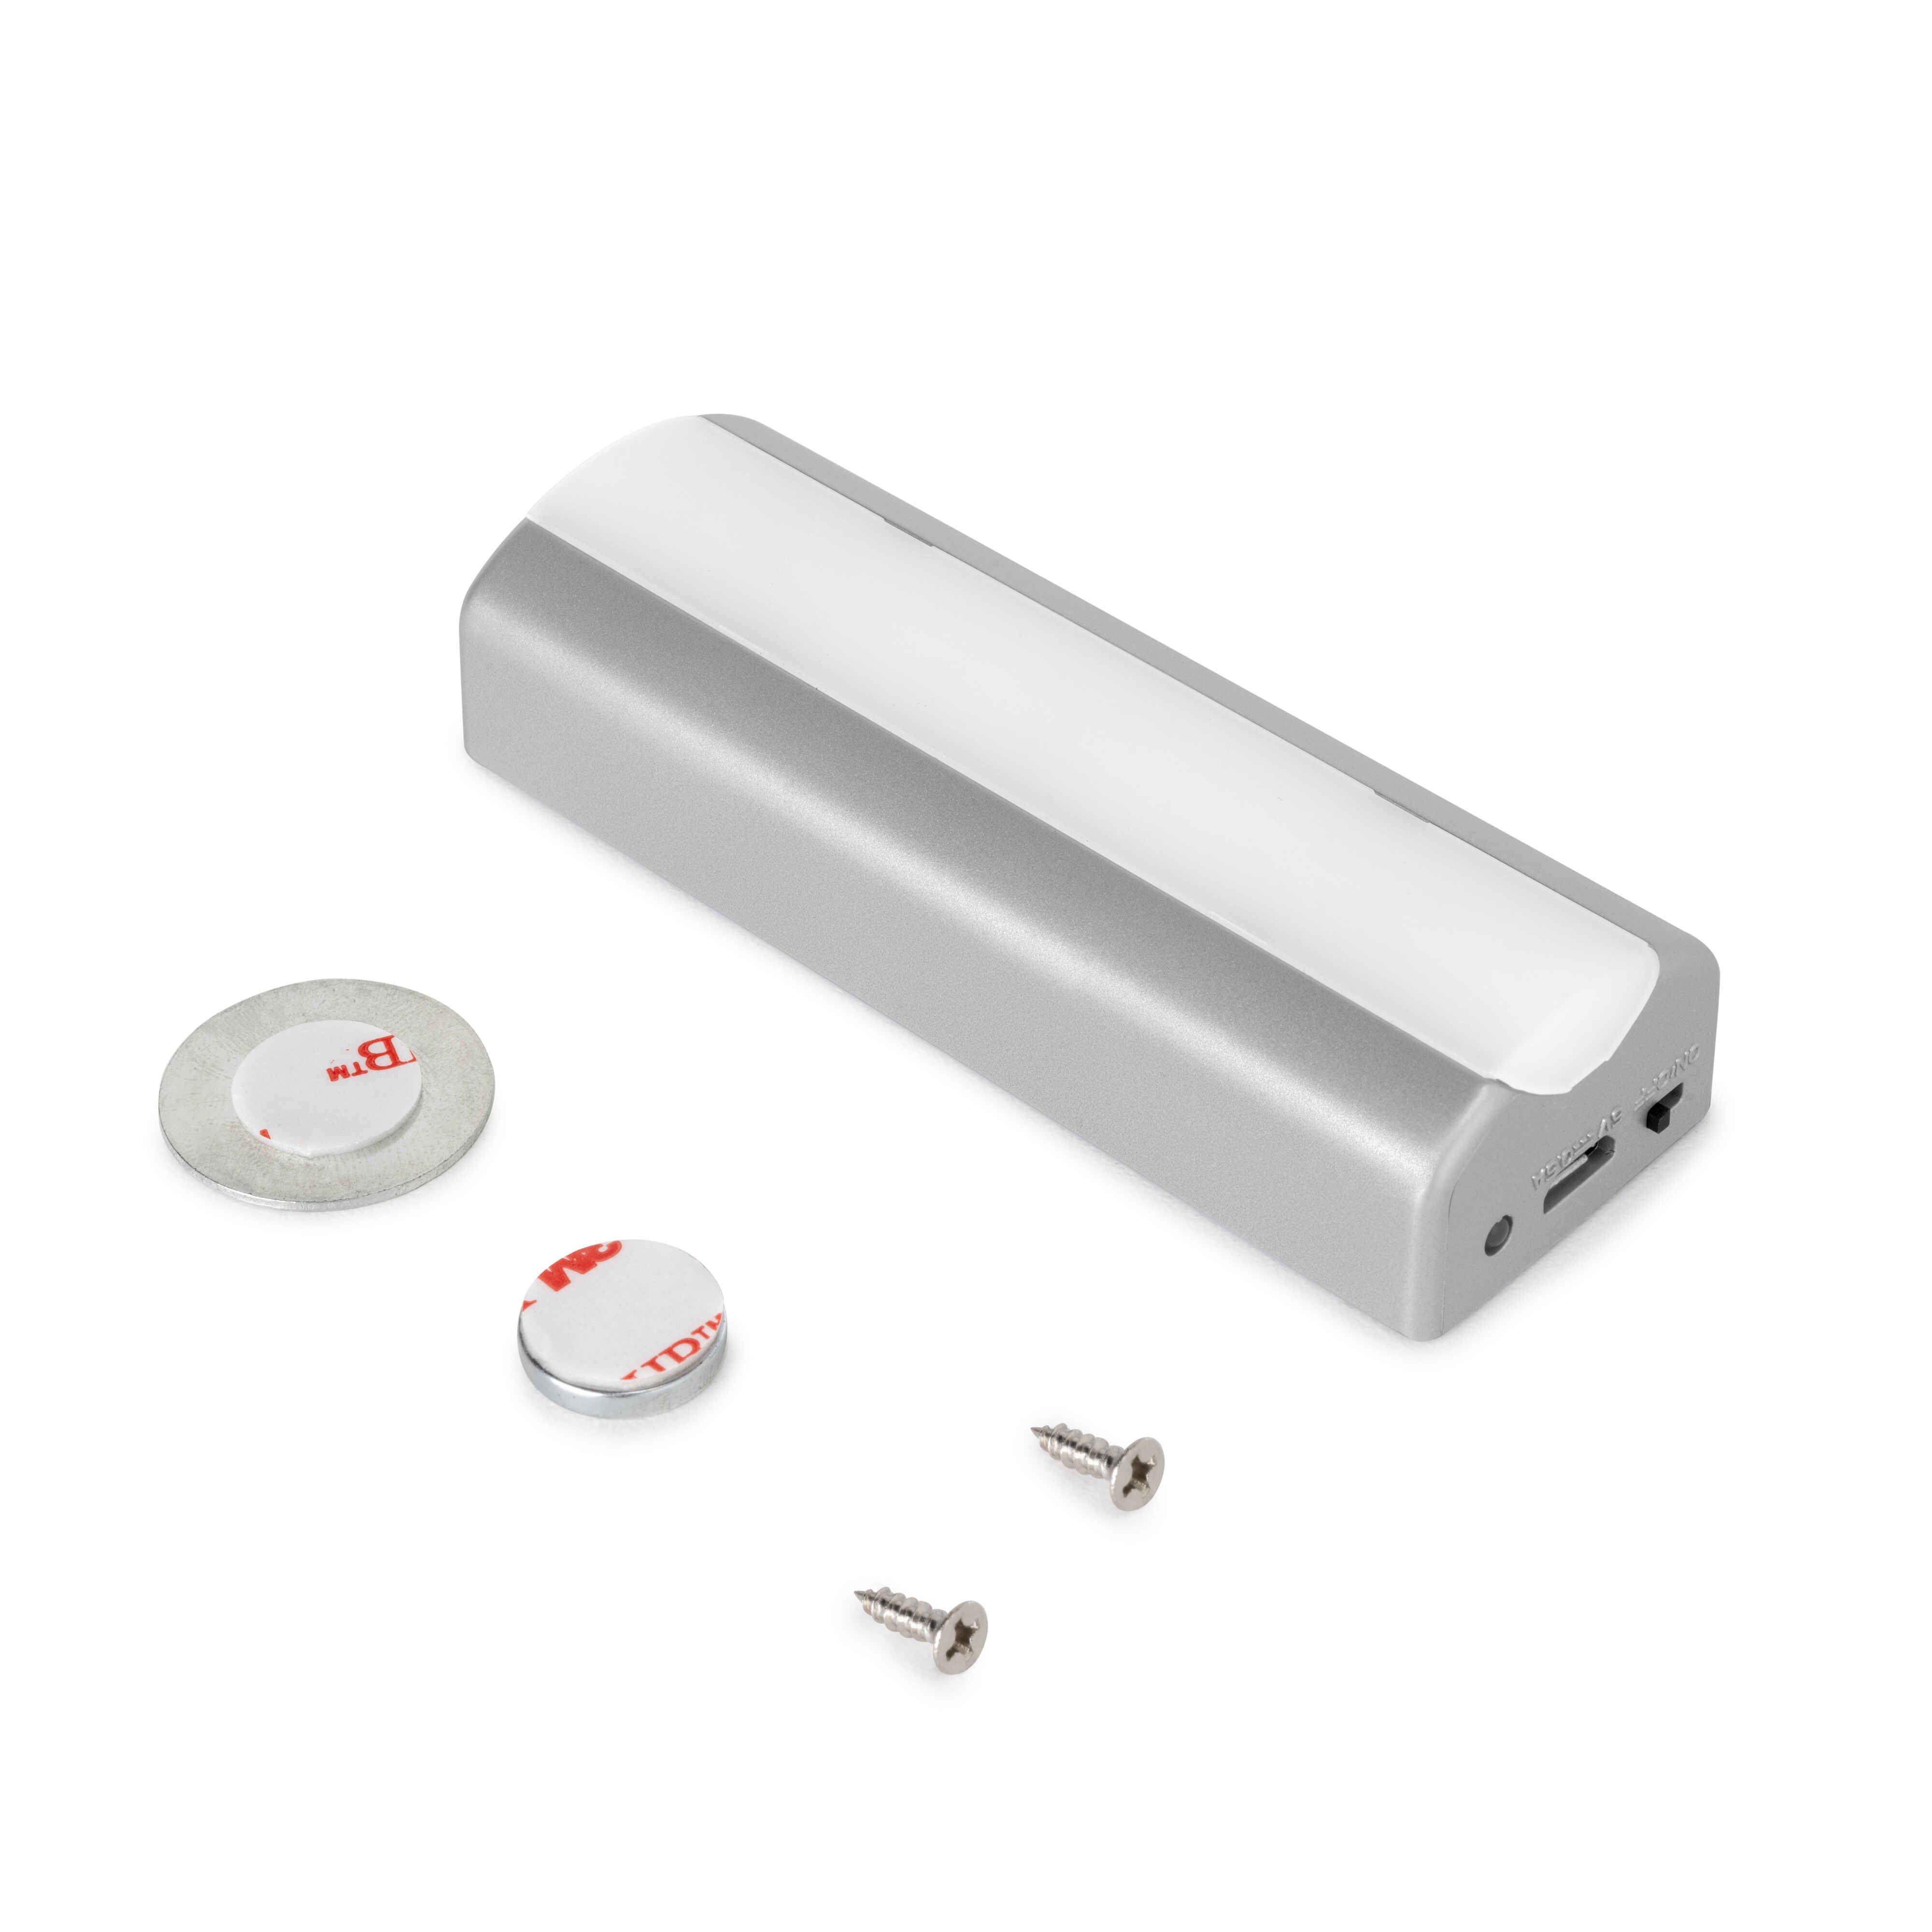 Luz LED recargable por USB Rigel para interior cajones con sensor de vibración, 1 W, Pintado aluminio, Plástico